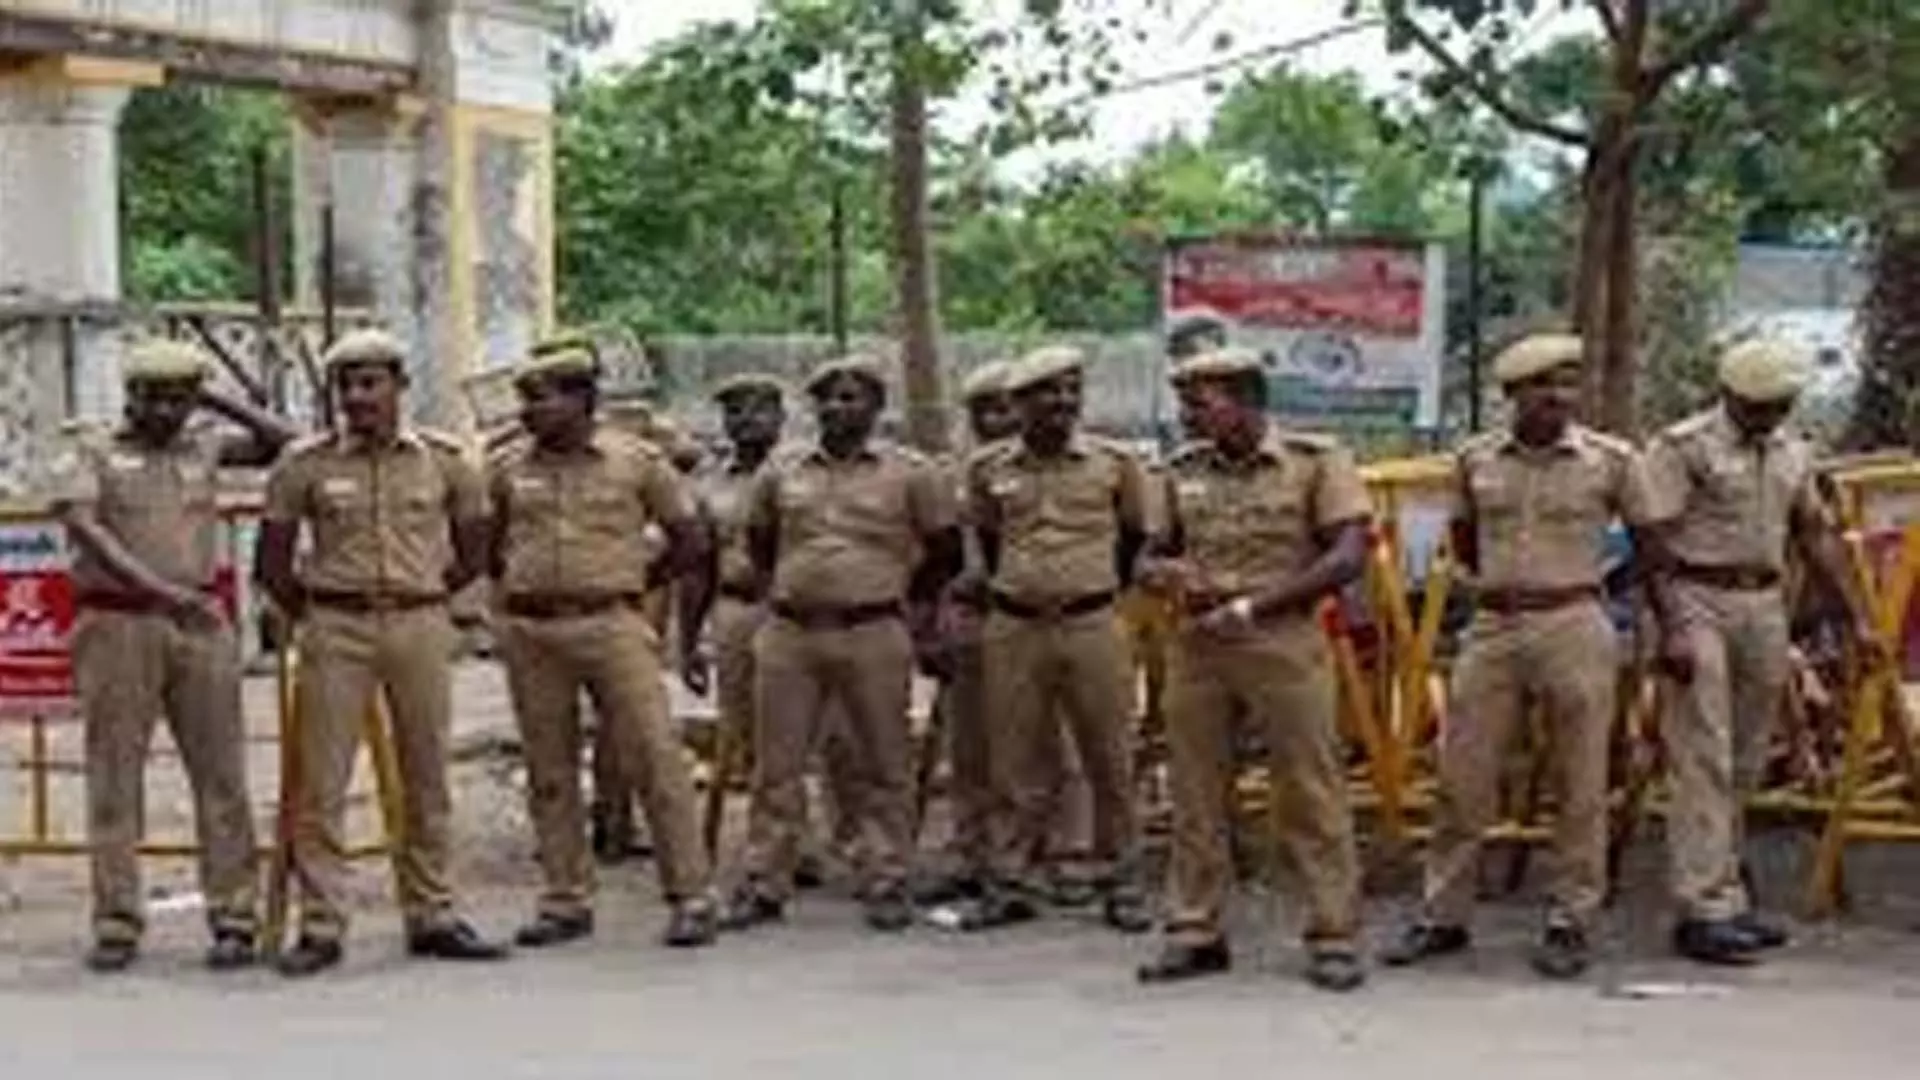 Chennai News: चेन्नई के स्कूलों को बम से उड़ाने की धमकी वाला ई-मेल मिला